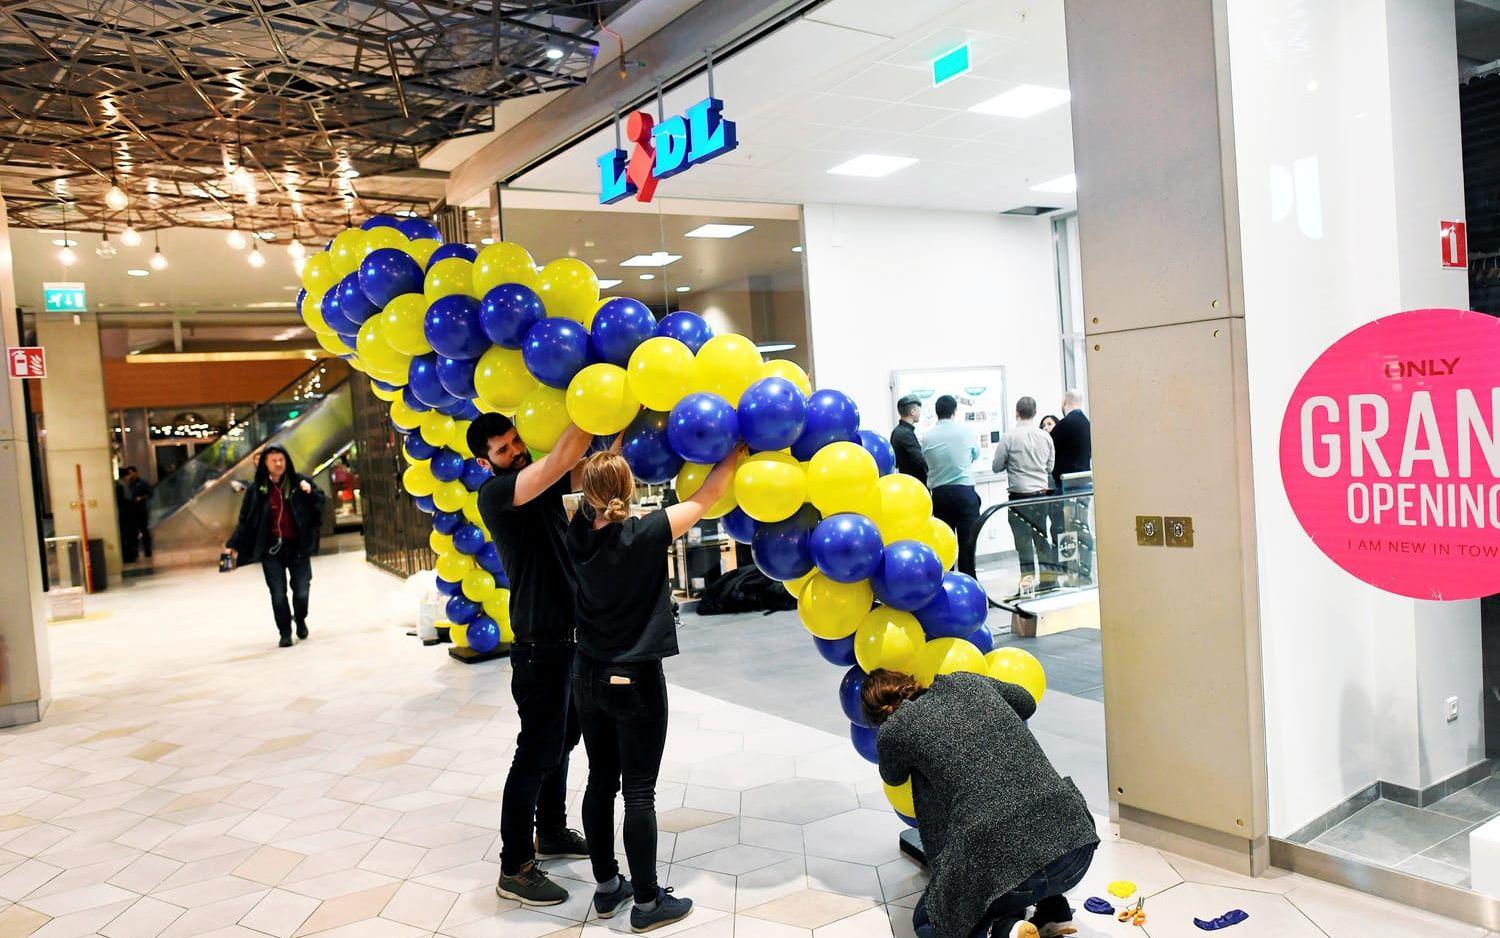 Medarbetarna fick jobba hårt för att få ballongerna till entrén på plats.